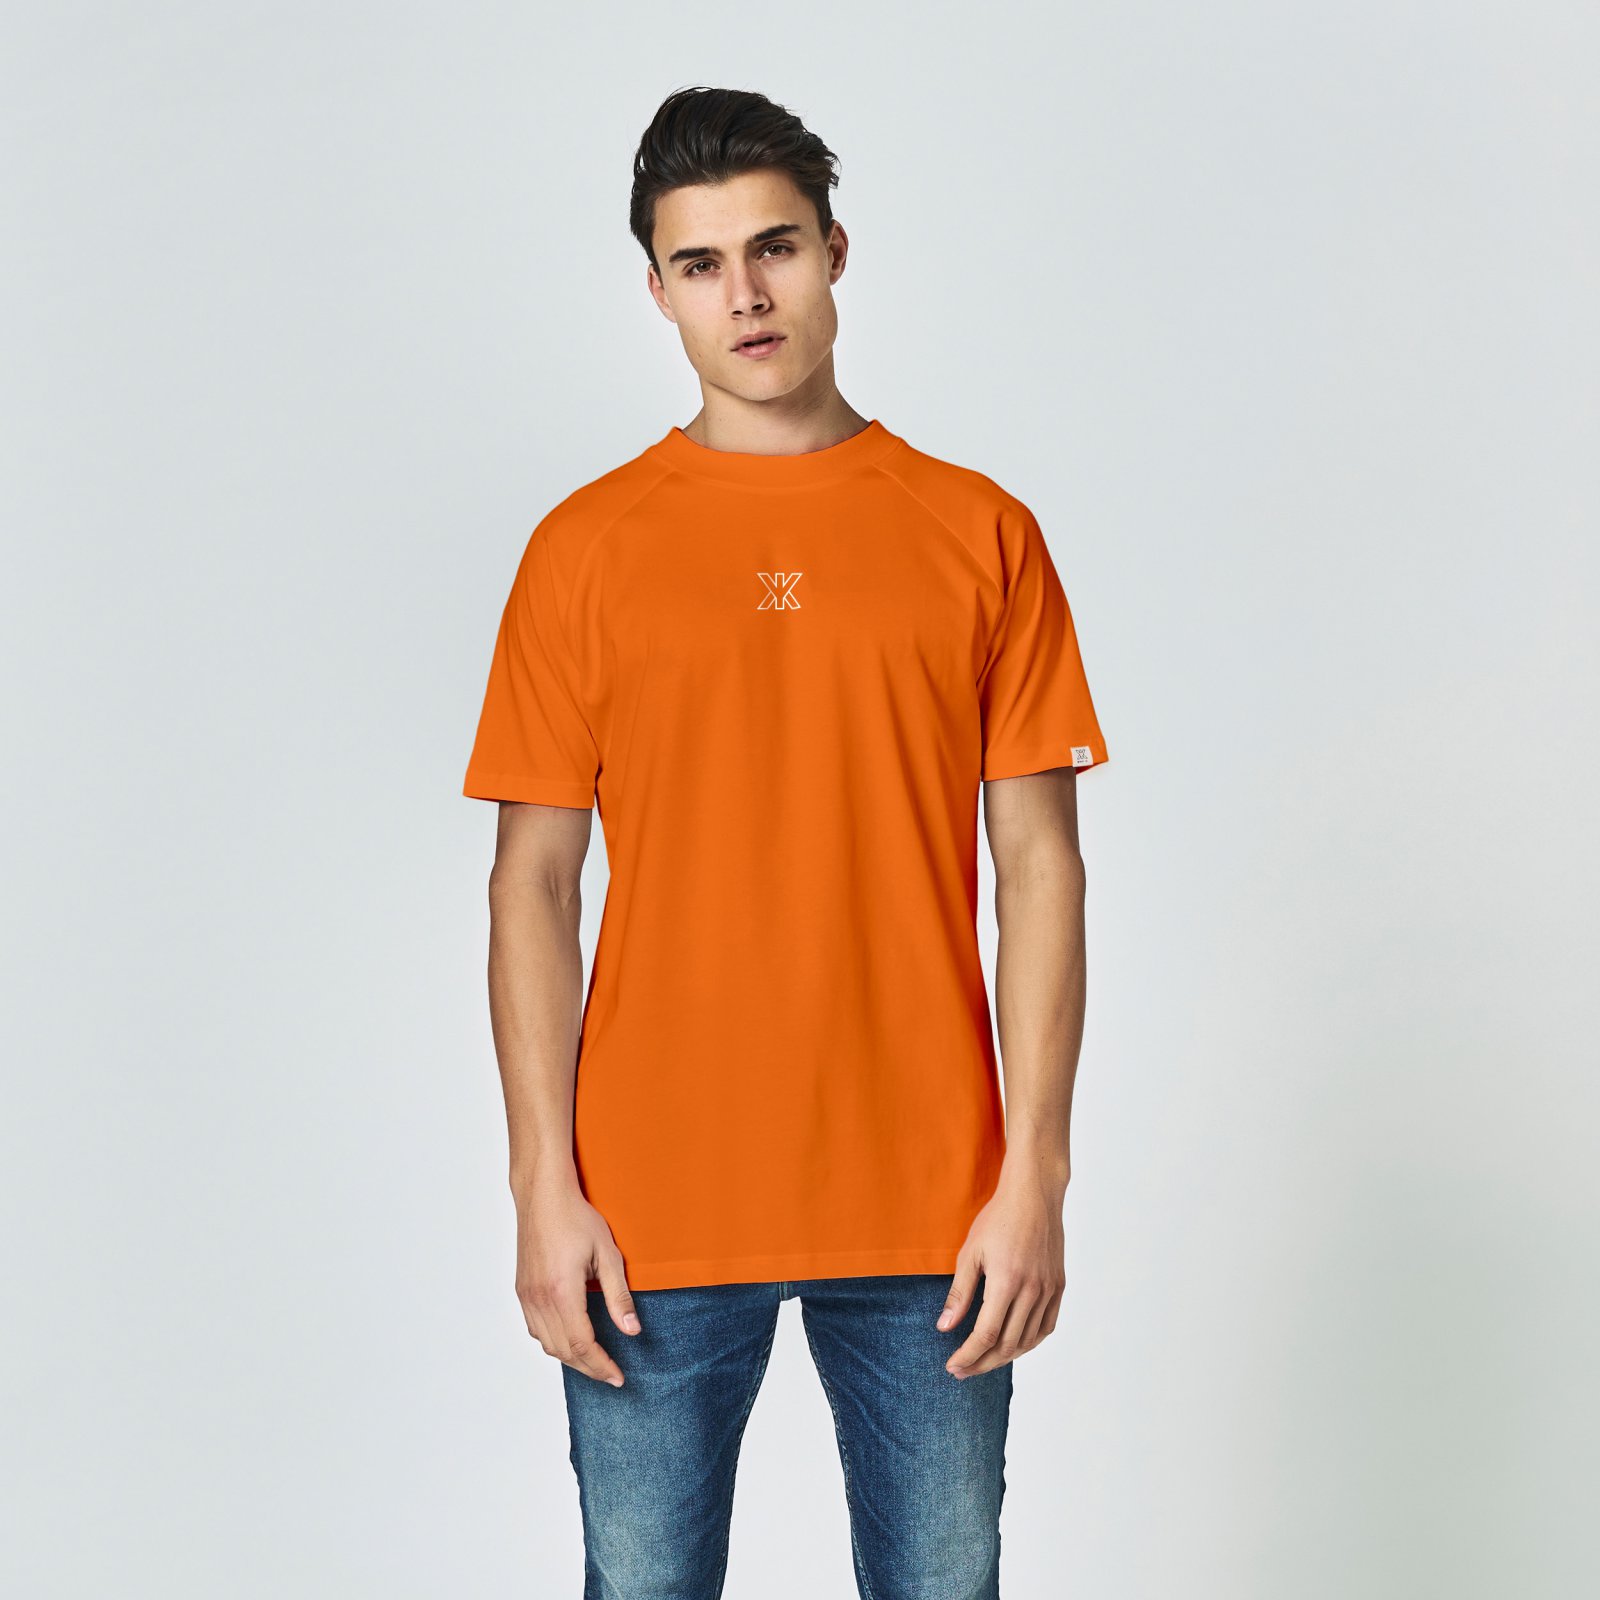 Icon tee orange | regular fit / MIKKY KI